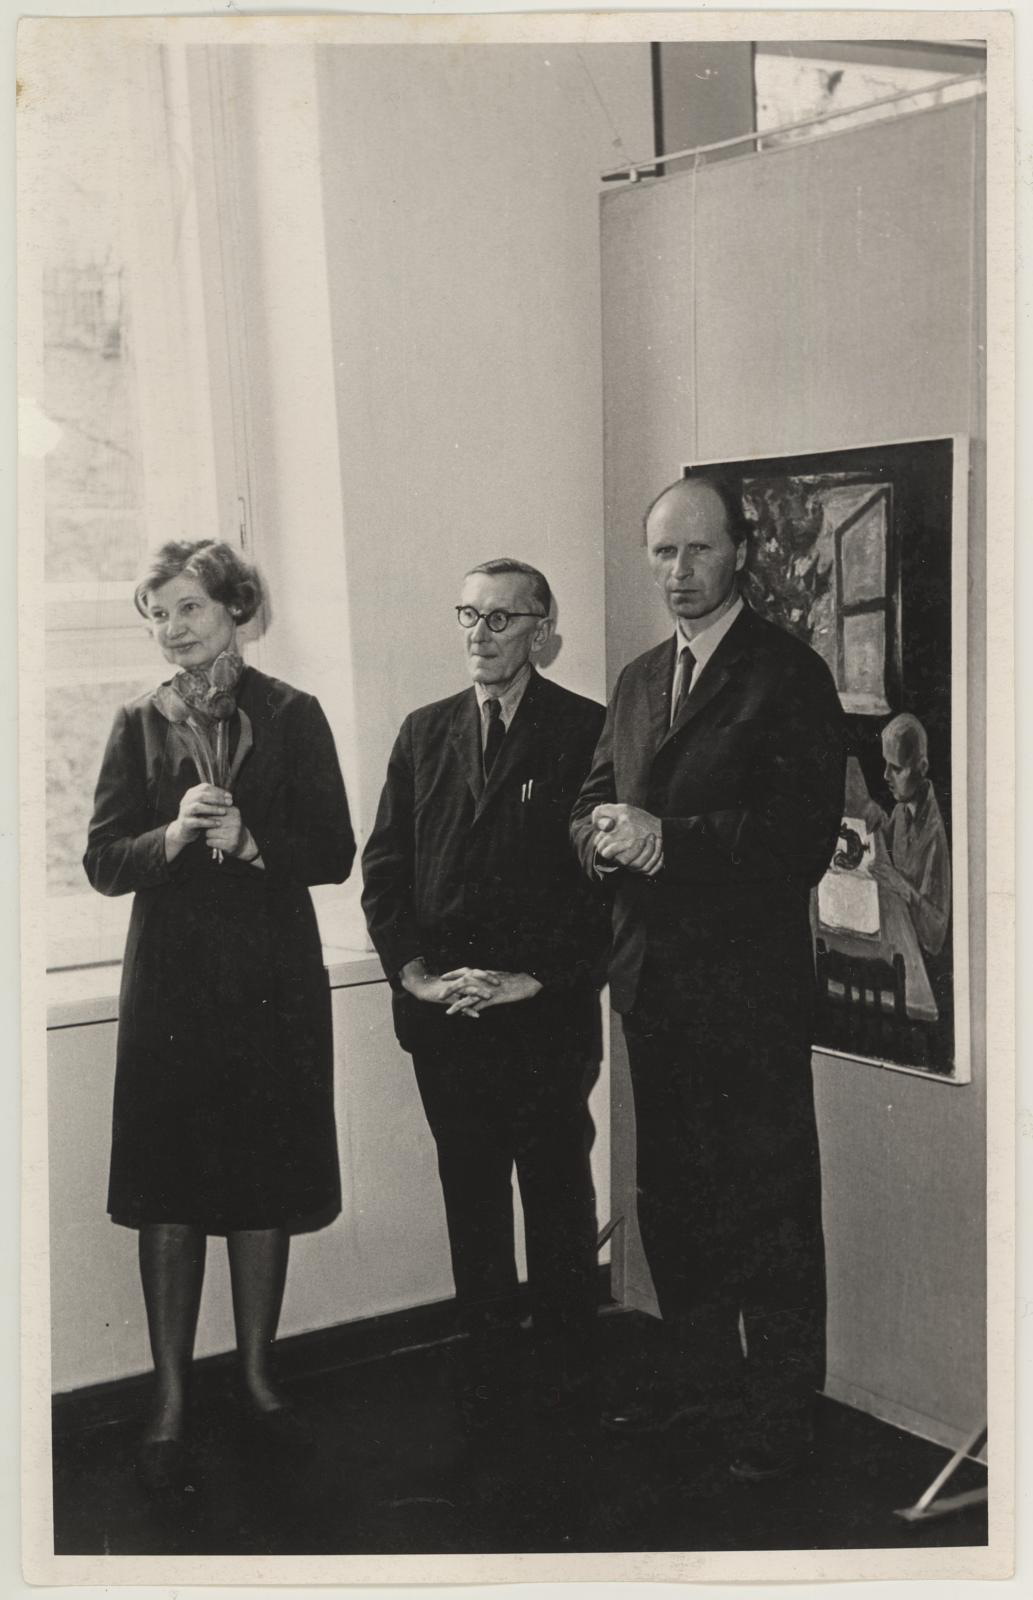 Maalikunstnike Olav Marani, Enn Põldroosi, Olev Subbi teoste näituse avamine 29. apr. 1967.